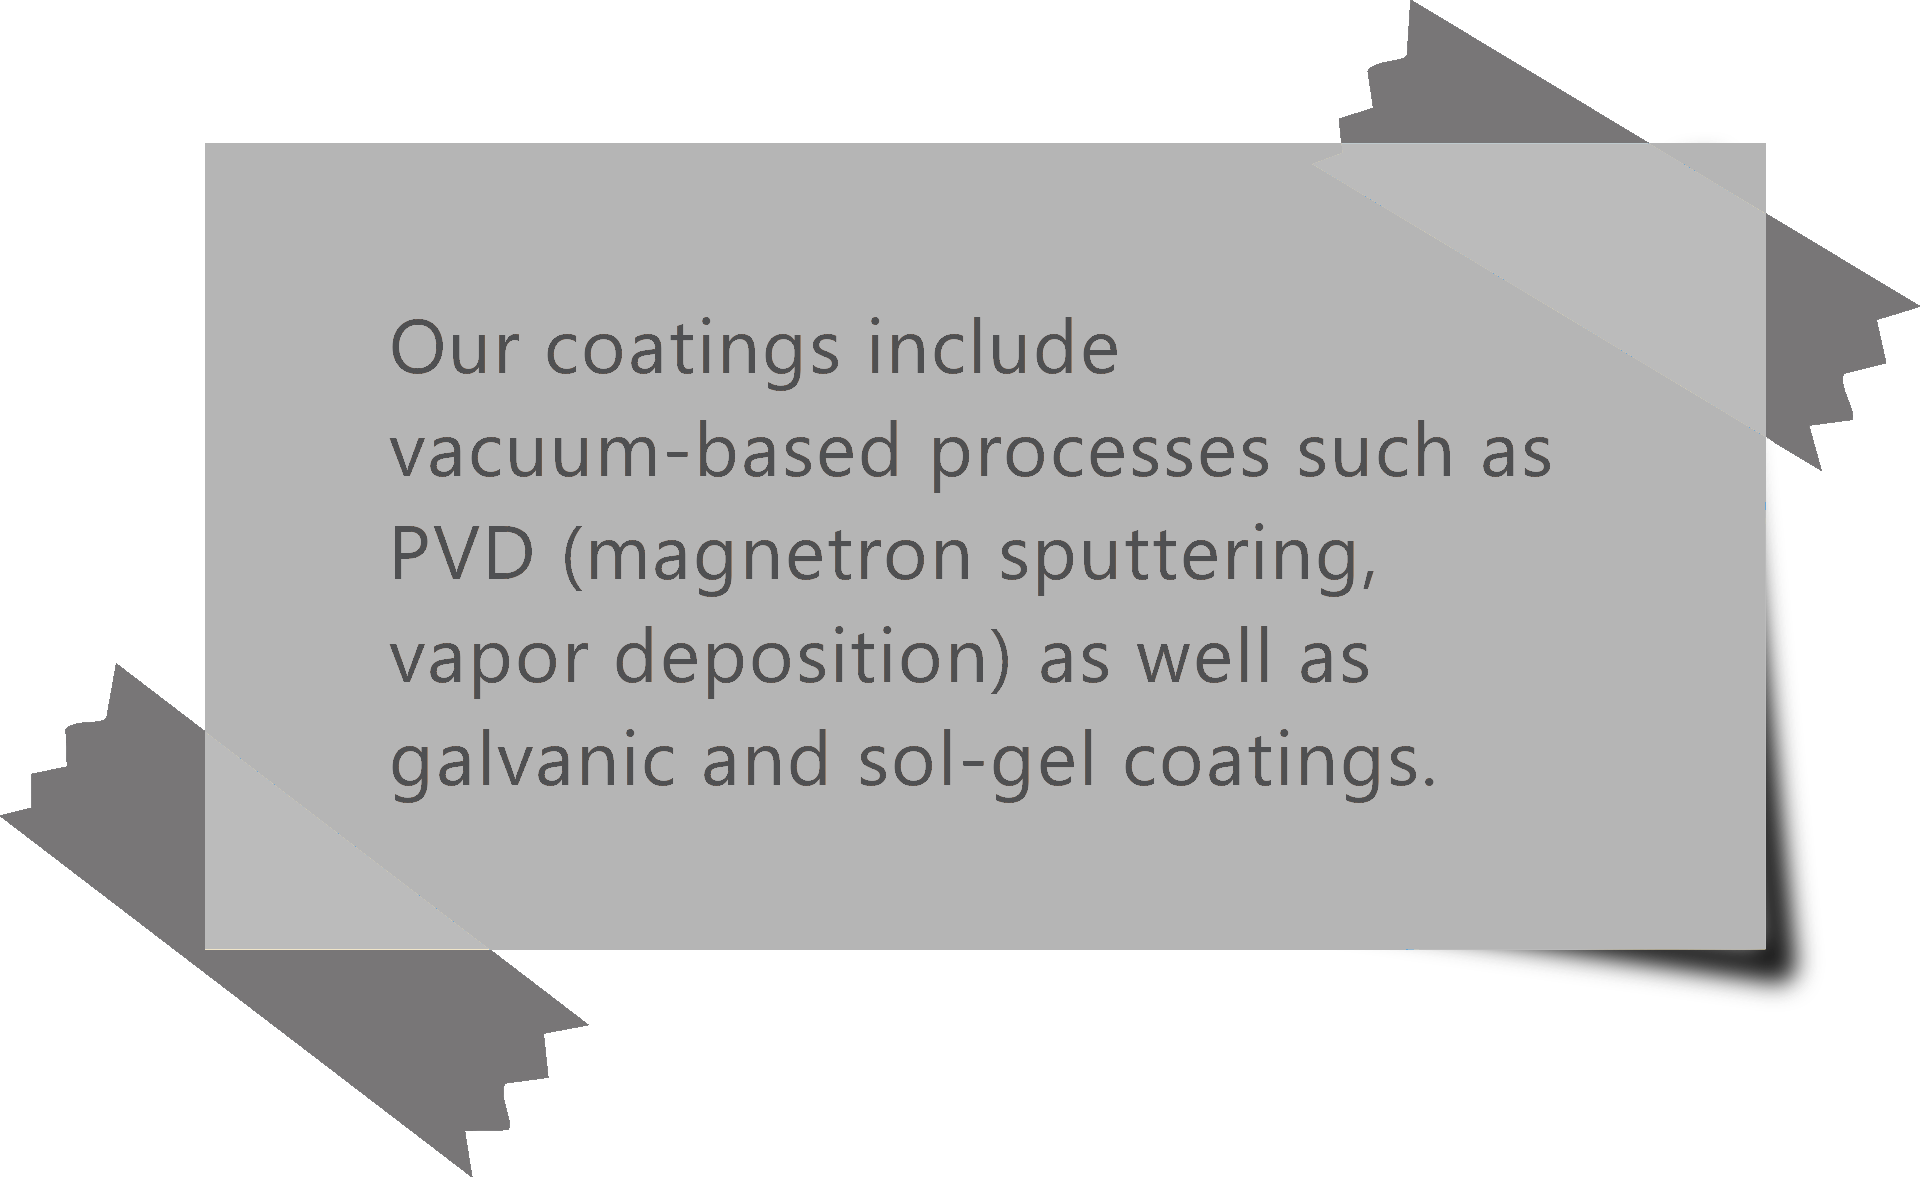 LiMedion offers PVD coatings, galvanic coatings or sol-gel coatings